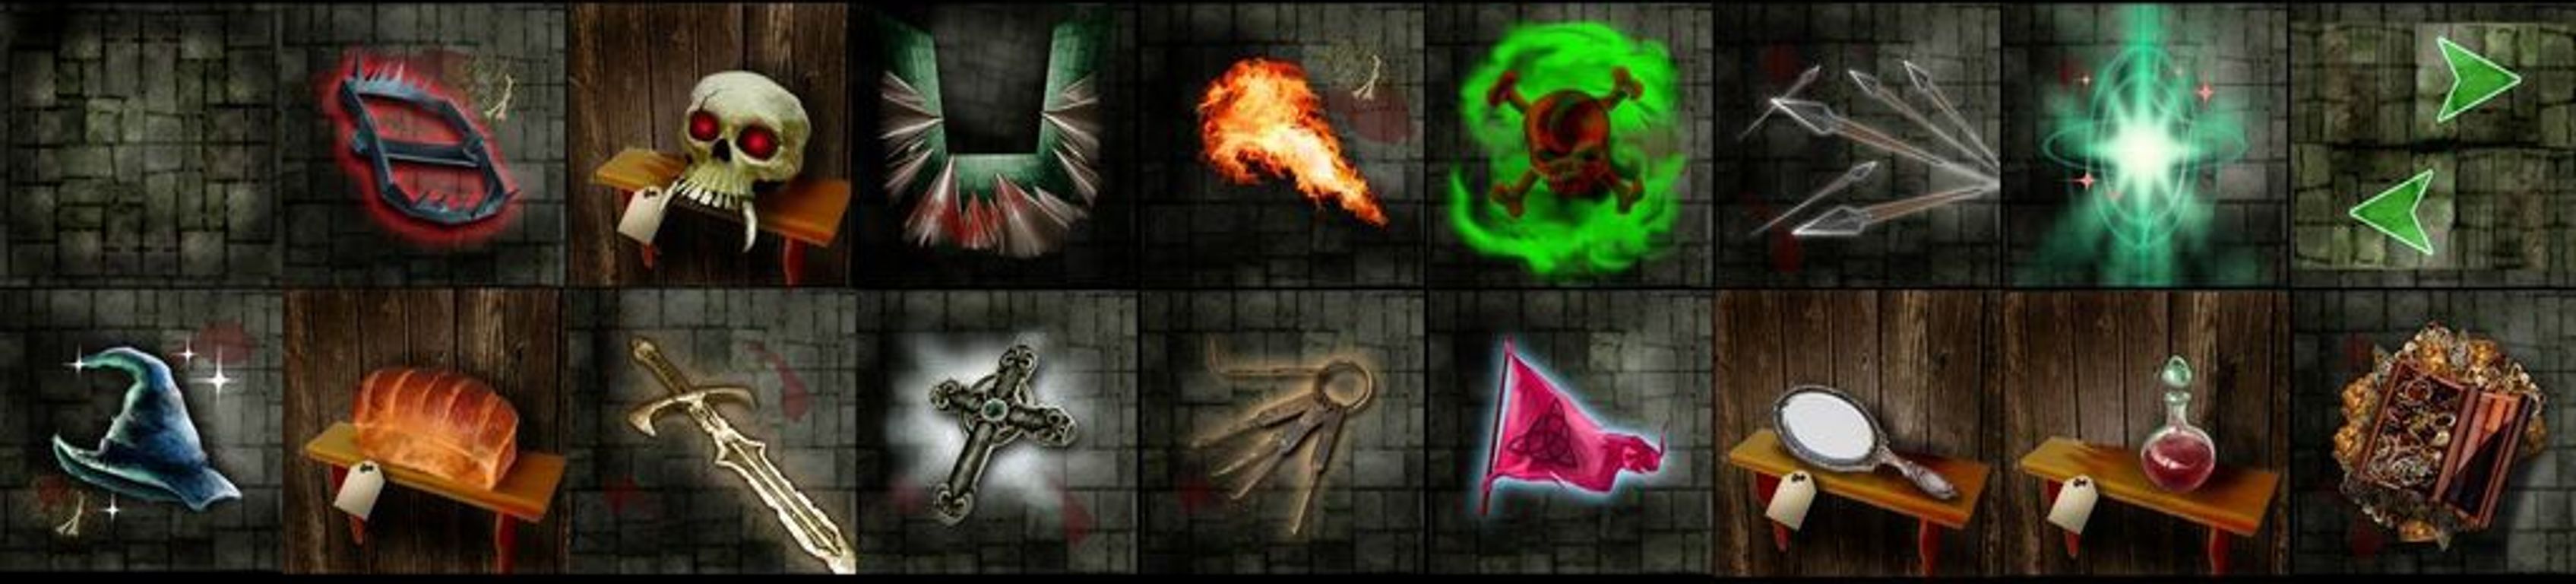 Dungeon Heroes cartas